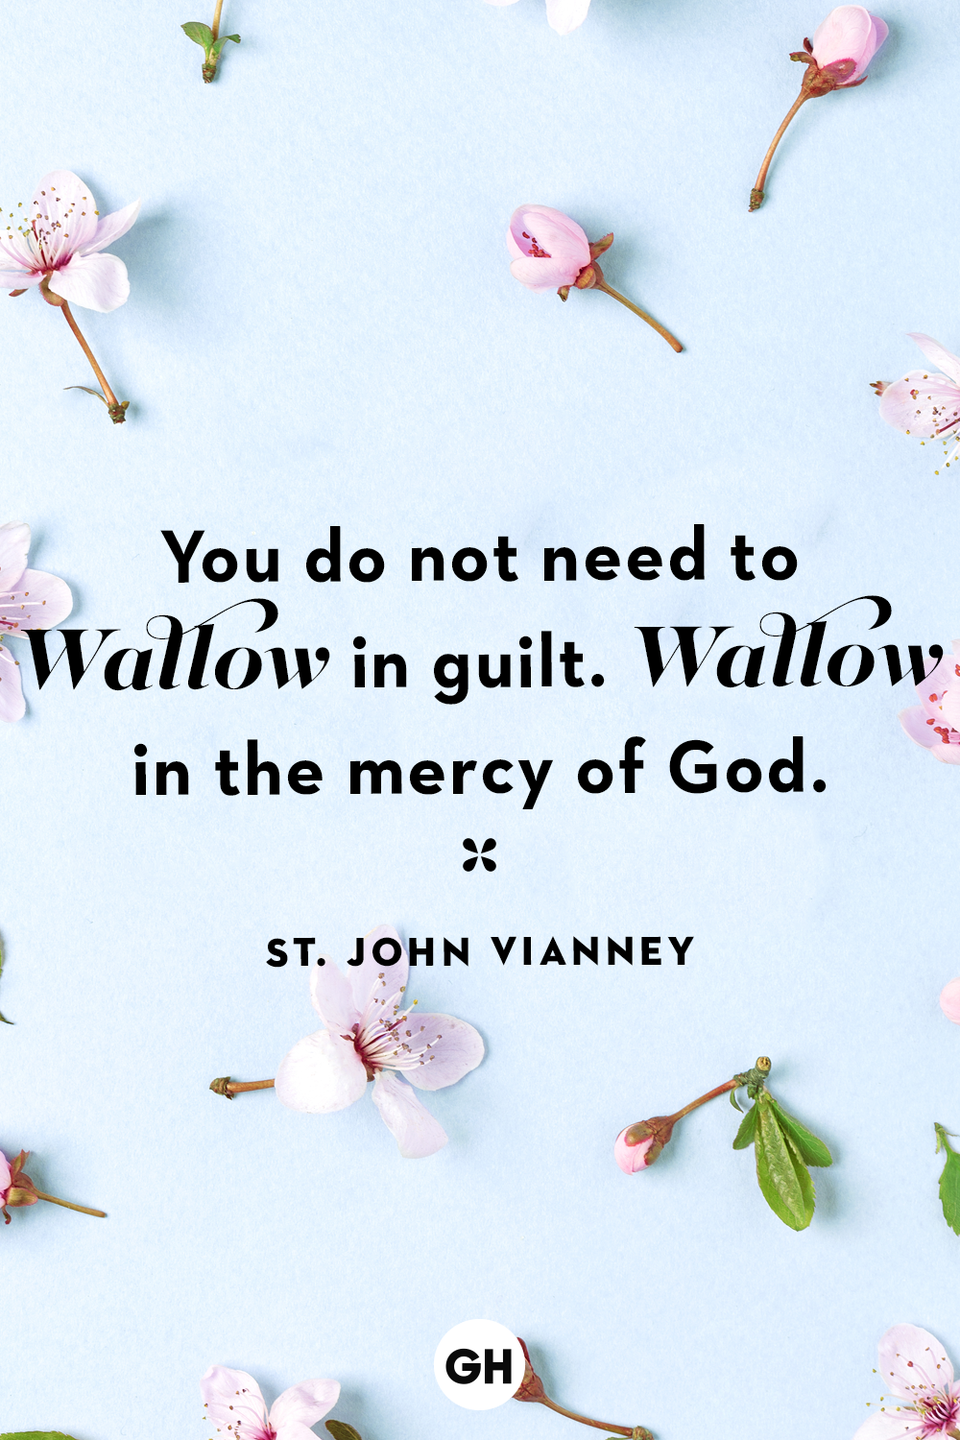 38) St. John Vianney